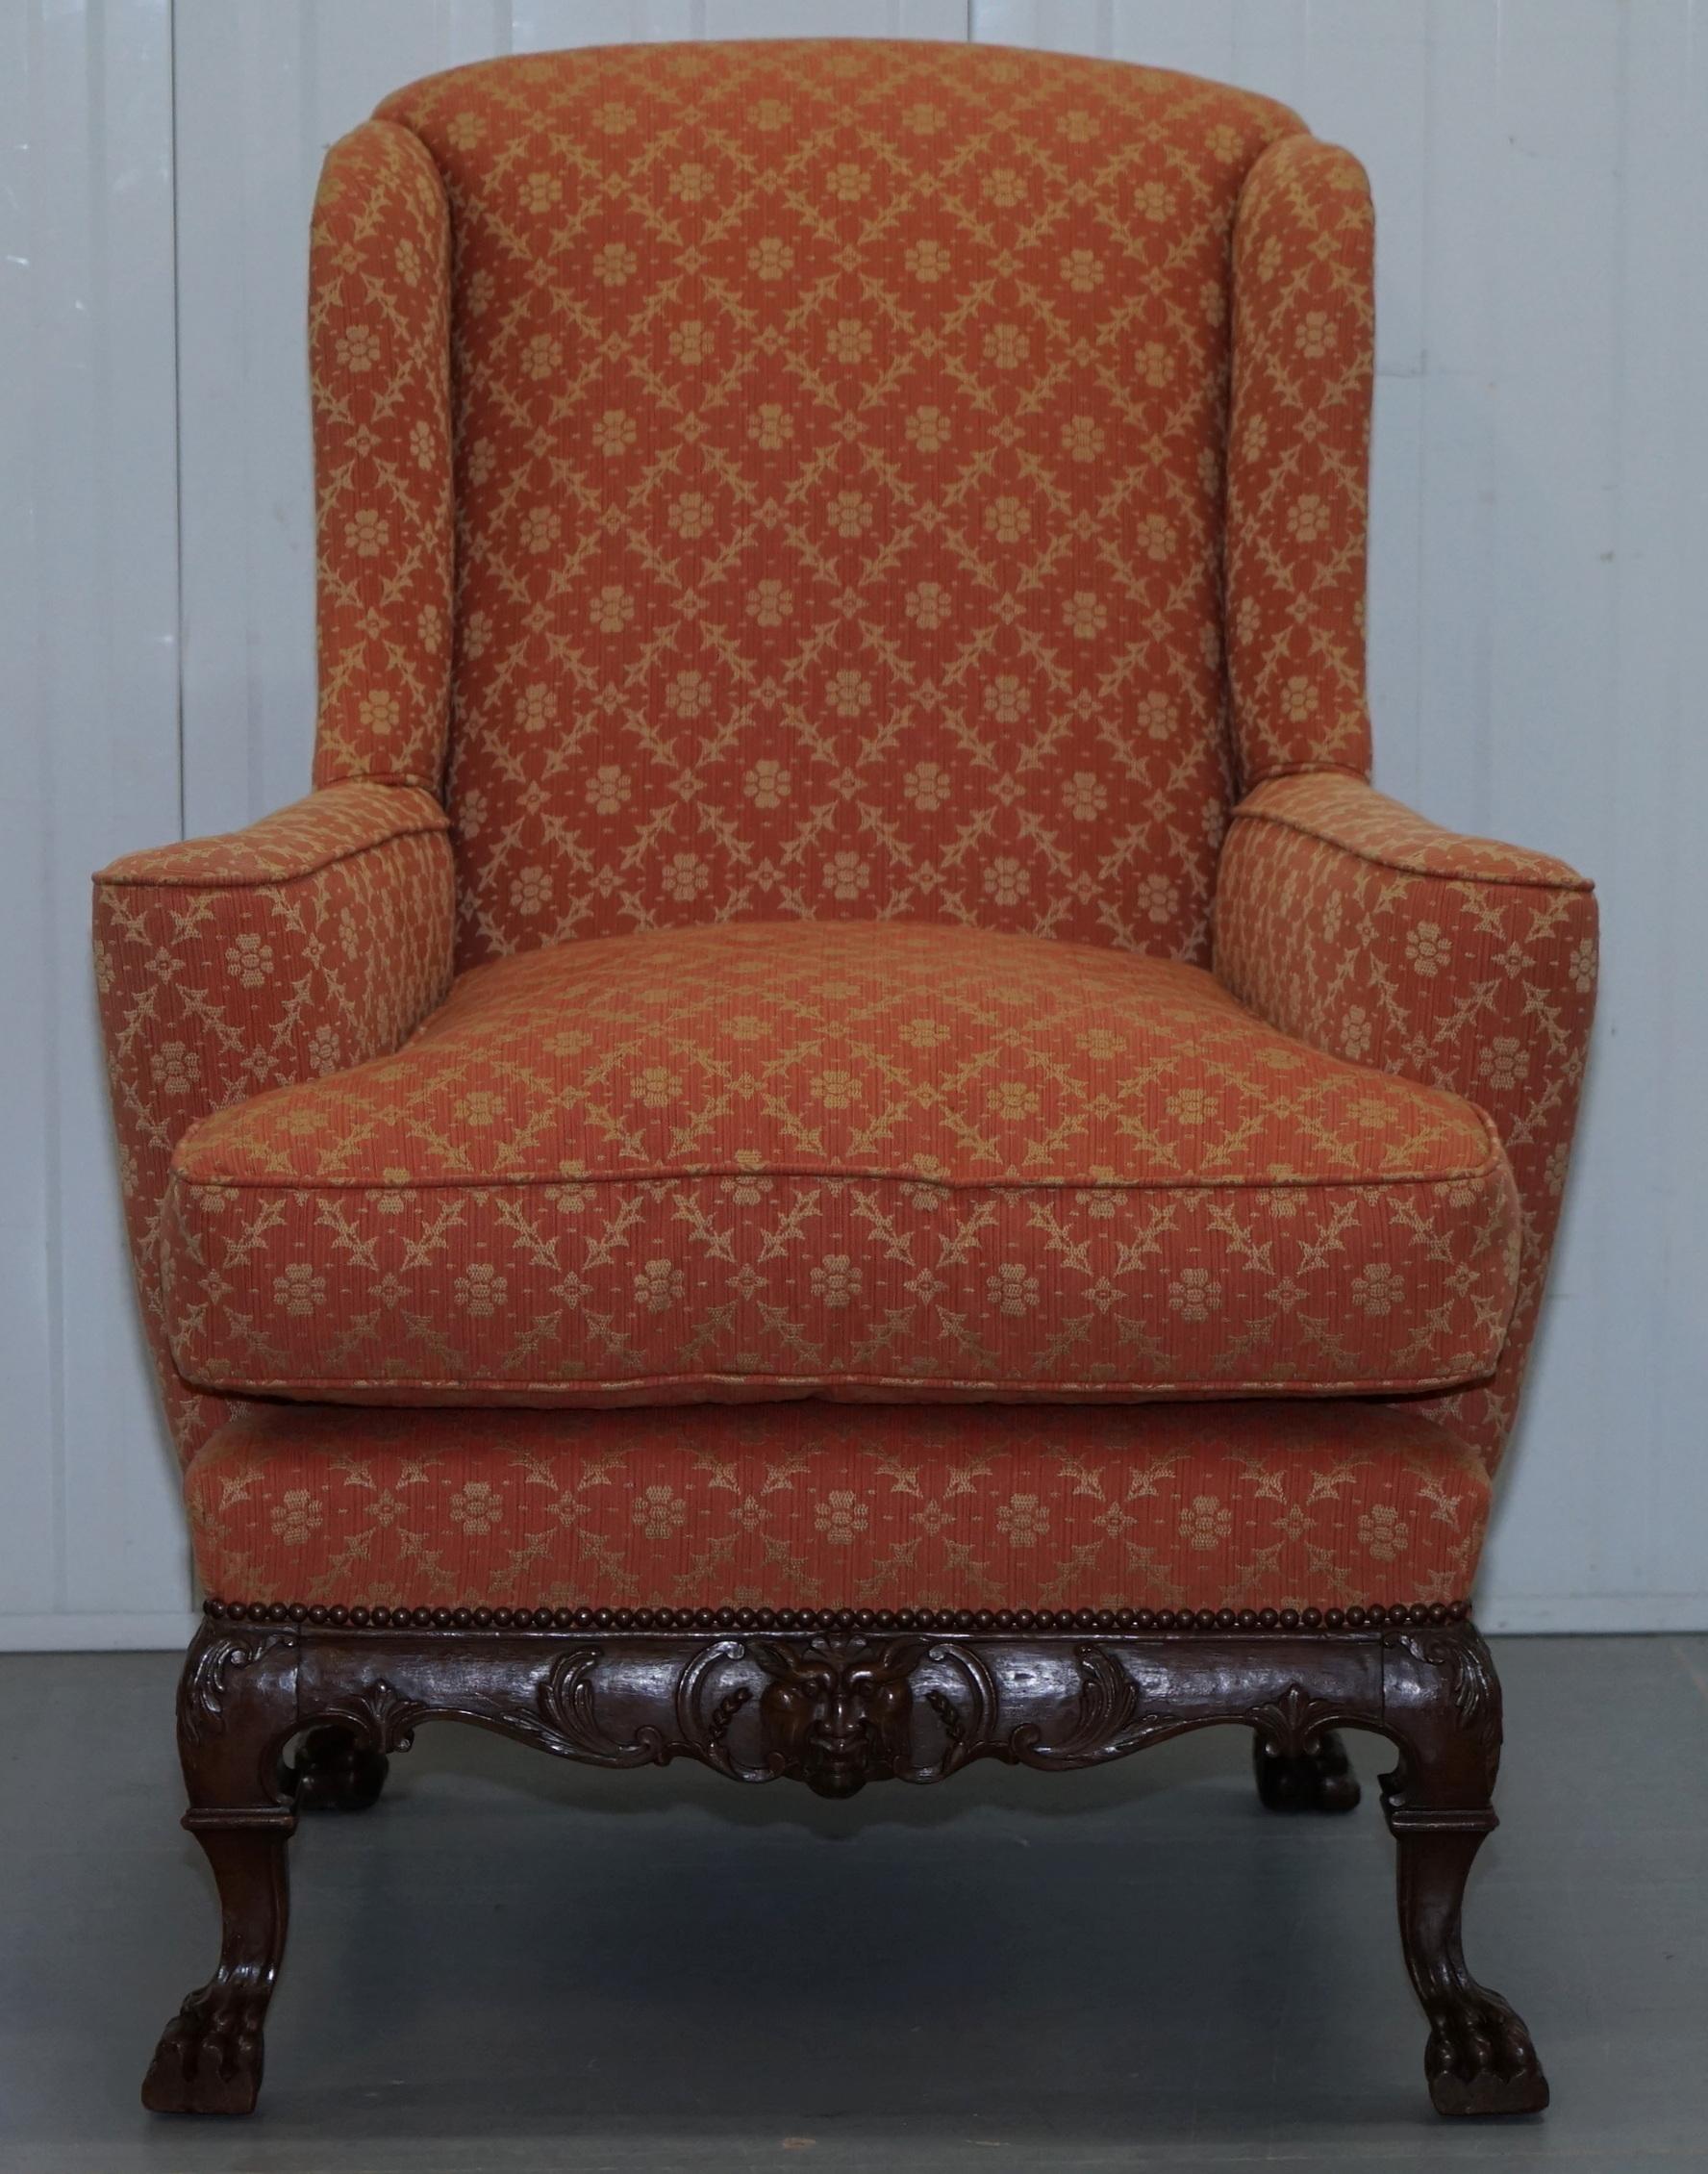 Nous sommes ravis d'offrir à la vente ce superbe fauteuil à dos ailé du 19ème siècle d'après le grand Thomas Chippendale

Un fauteuil très beau, bien fait et décoratif, les bras plats sont très 18ème siècle, la sculpture et le style général sont